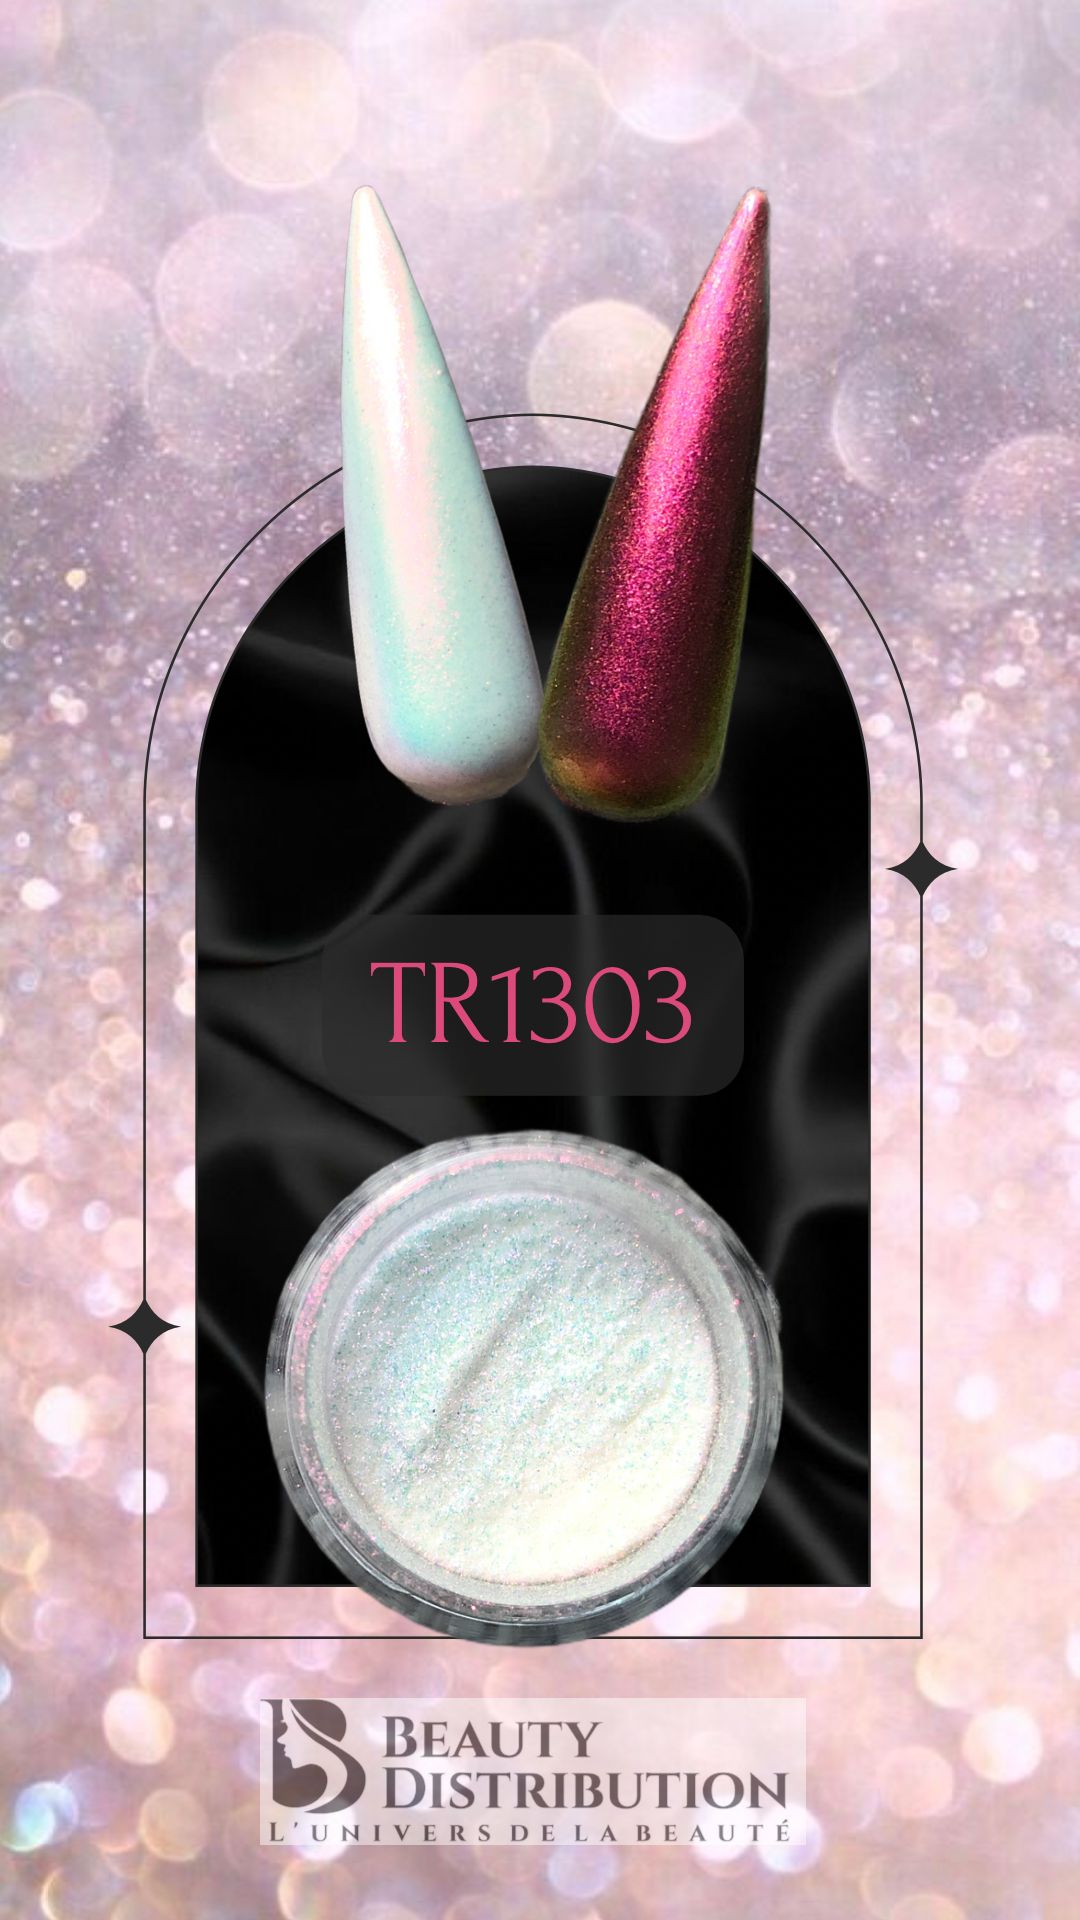 chrome TR1303